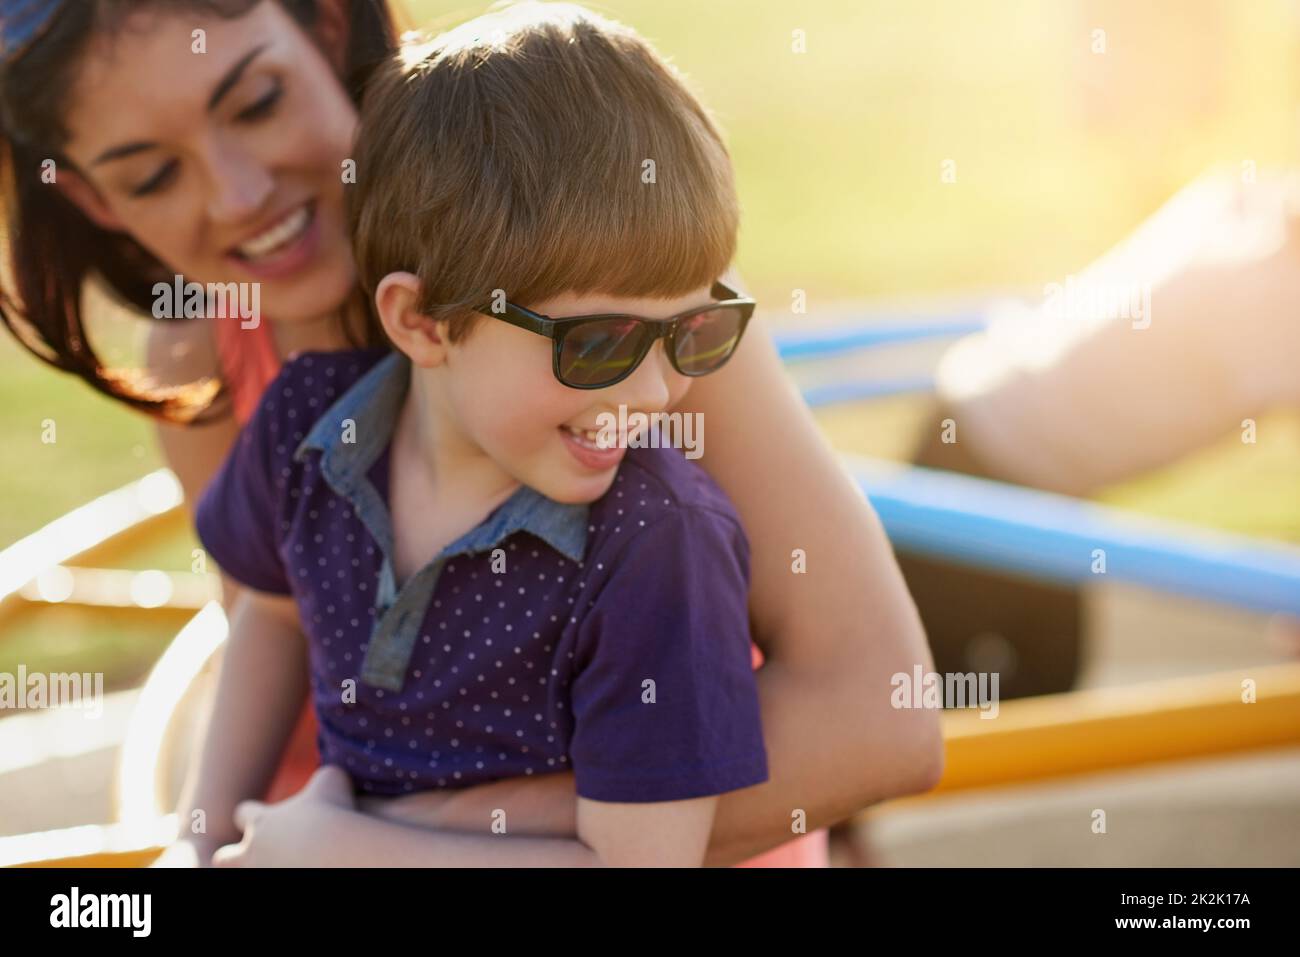 Der Fokus liegt auf viel Spaß. Eine kurze Aufnahme einer Mutter und eines Sohnes, die gemeinsam einen Tag im Park genießen. Stockfoto